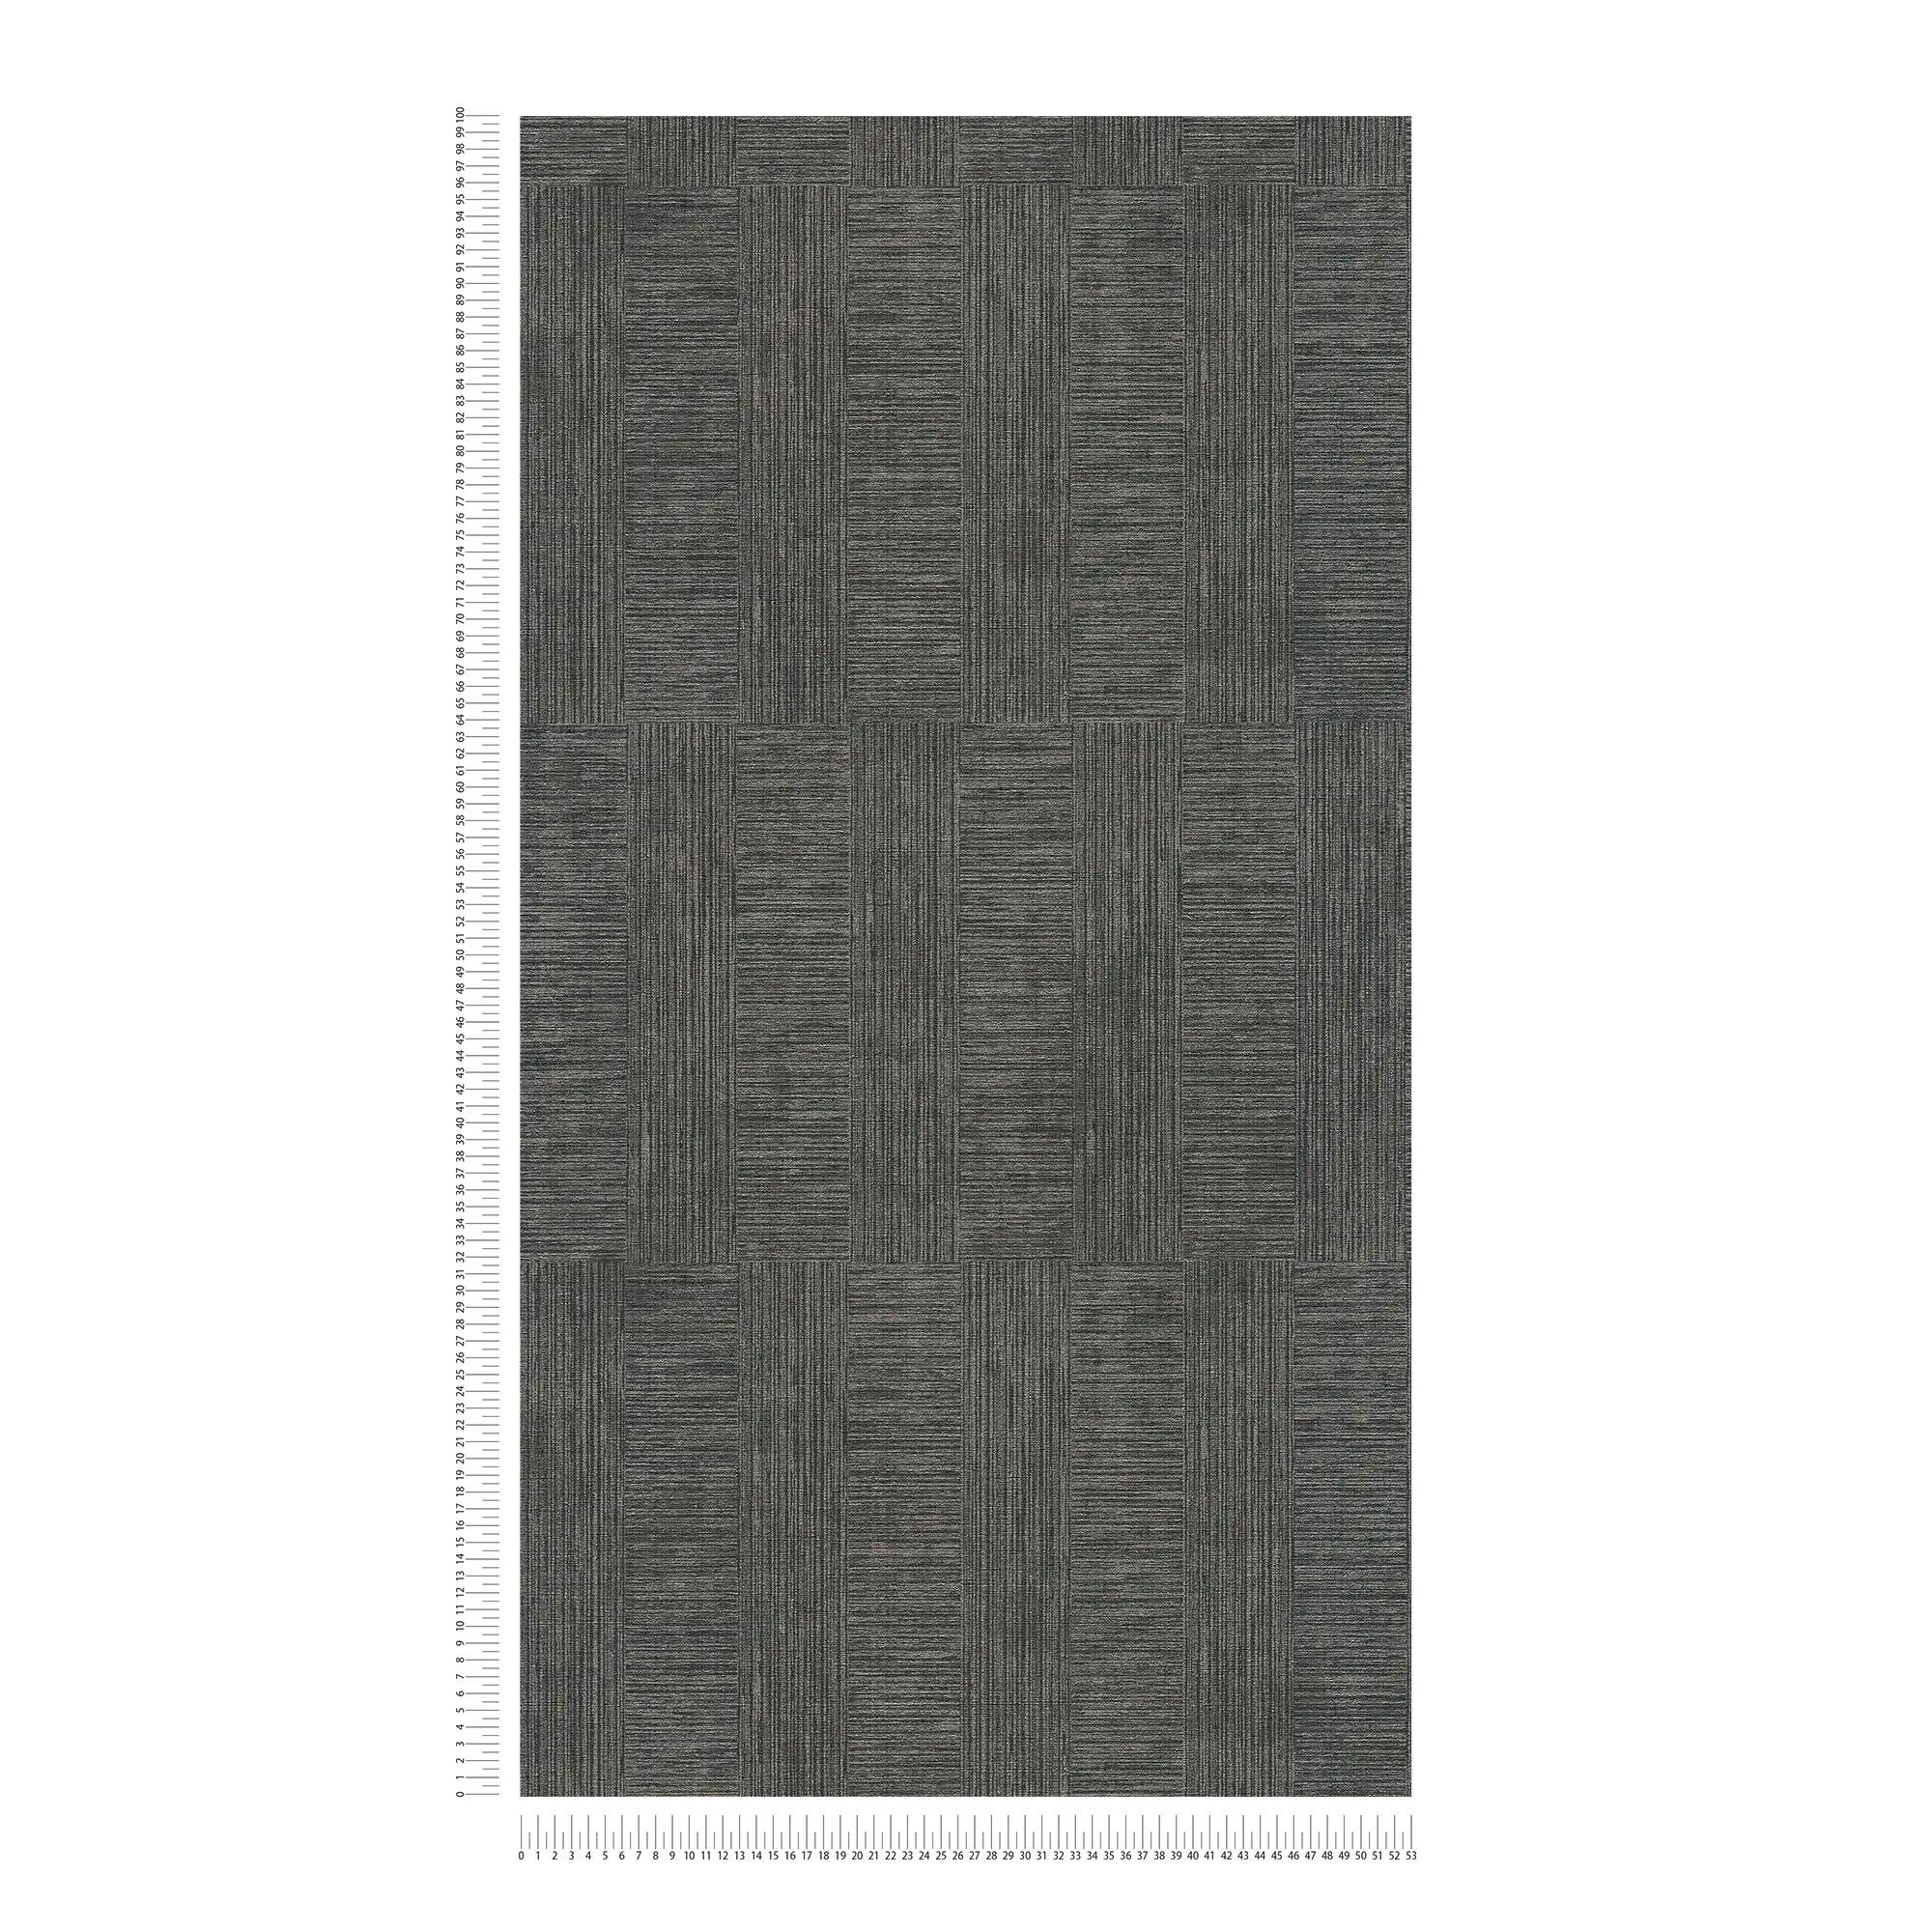             Papier peint effet bois texture chinée - métallique, noir
        